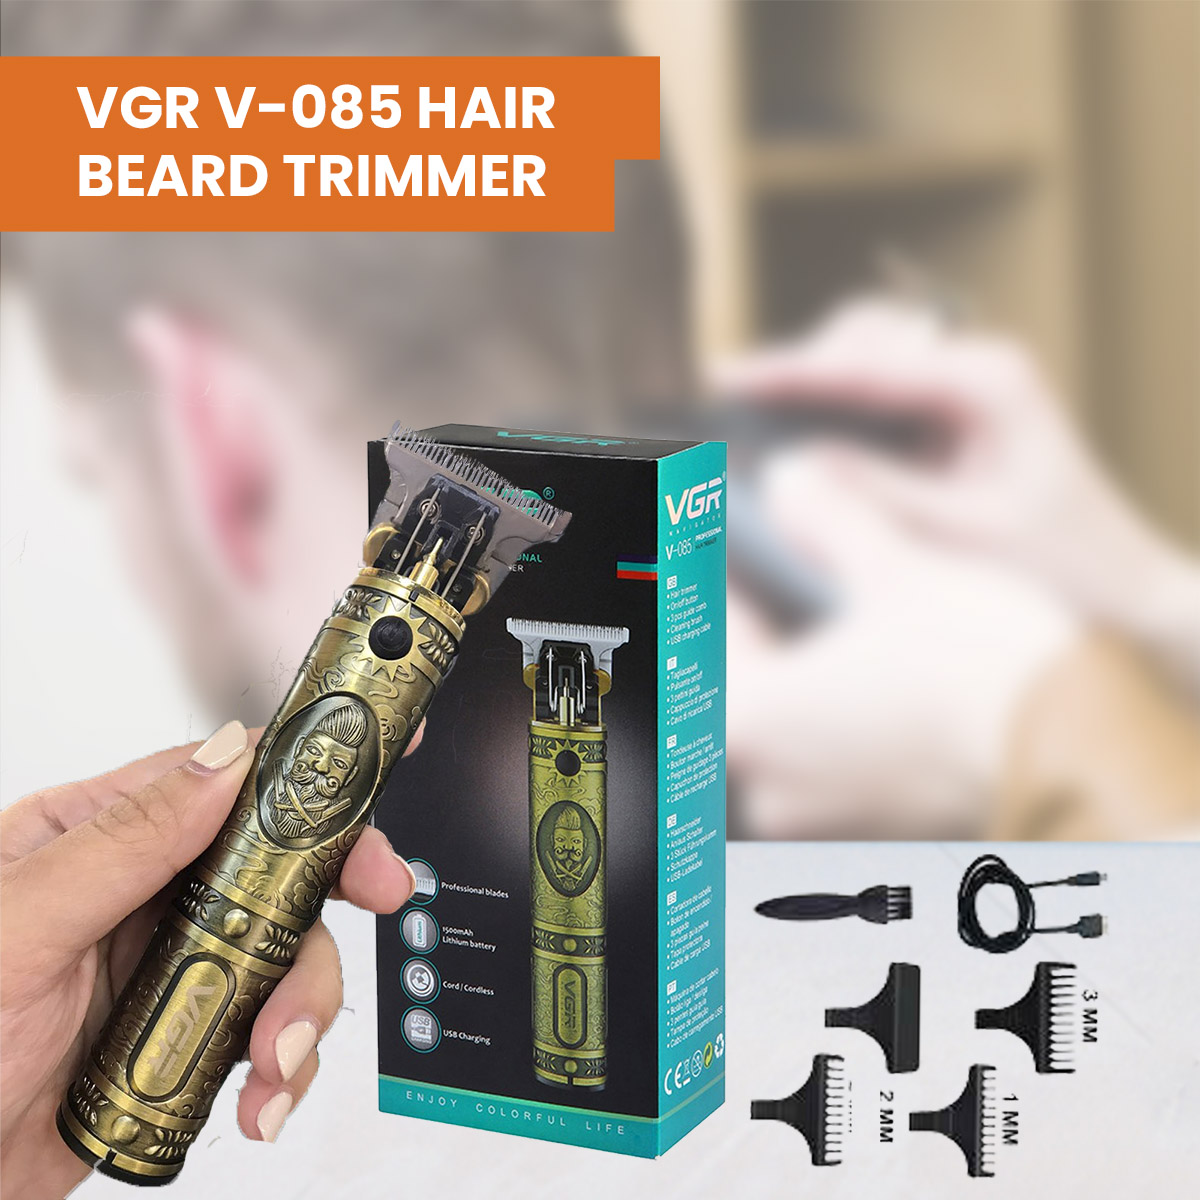 VGR voyager V-085 professional hair trimmer 